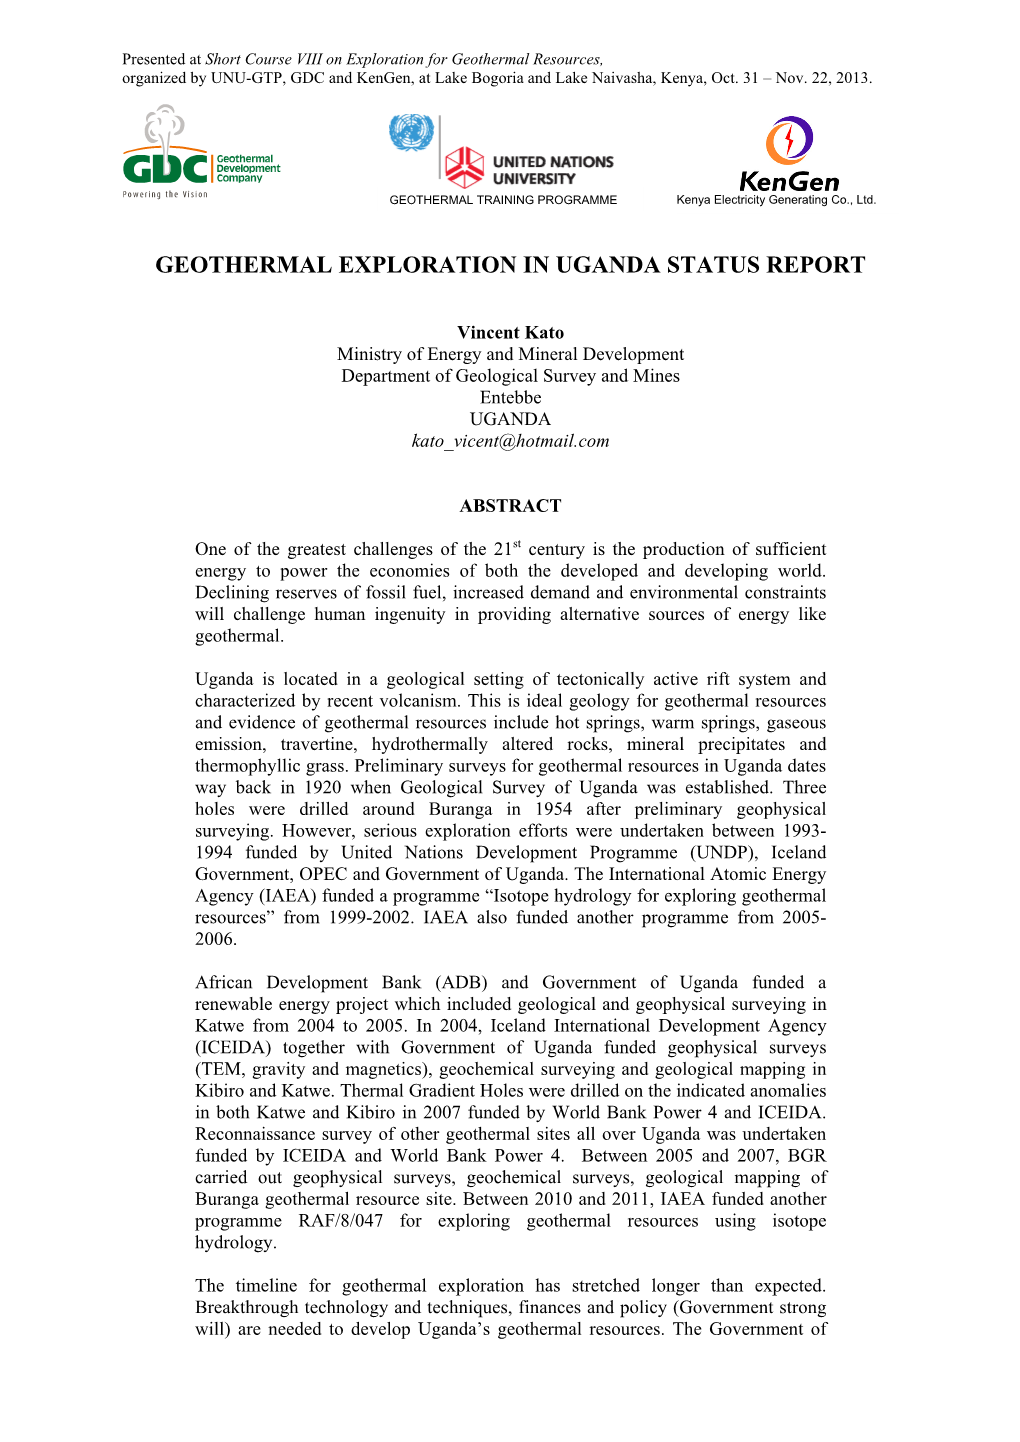 Geothermal Exploration in Uganda Status Report